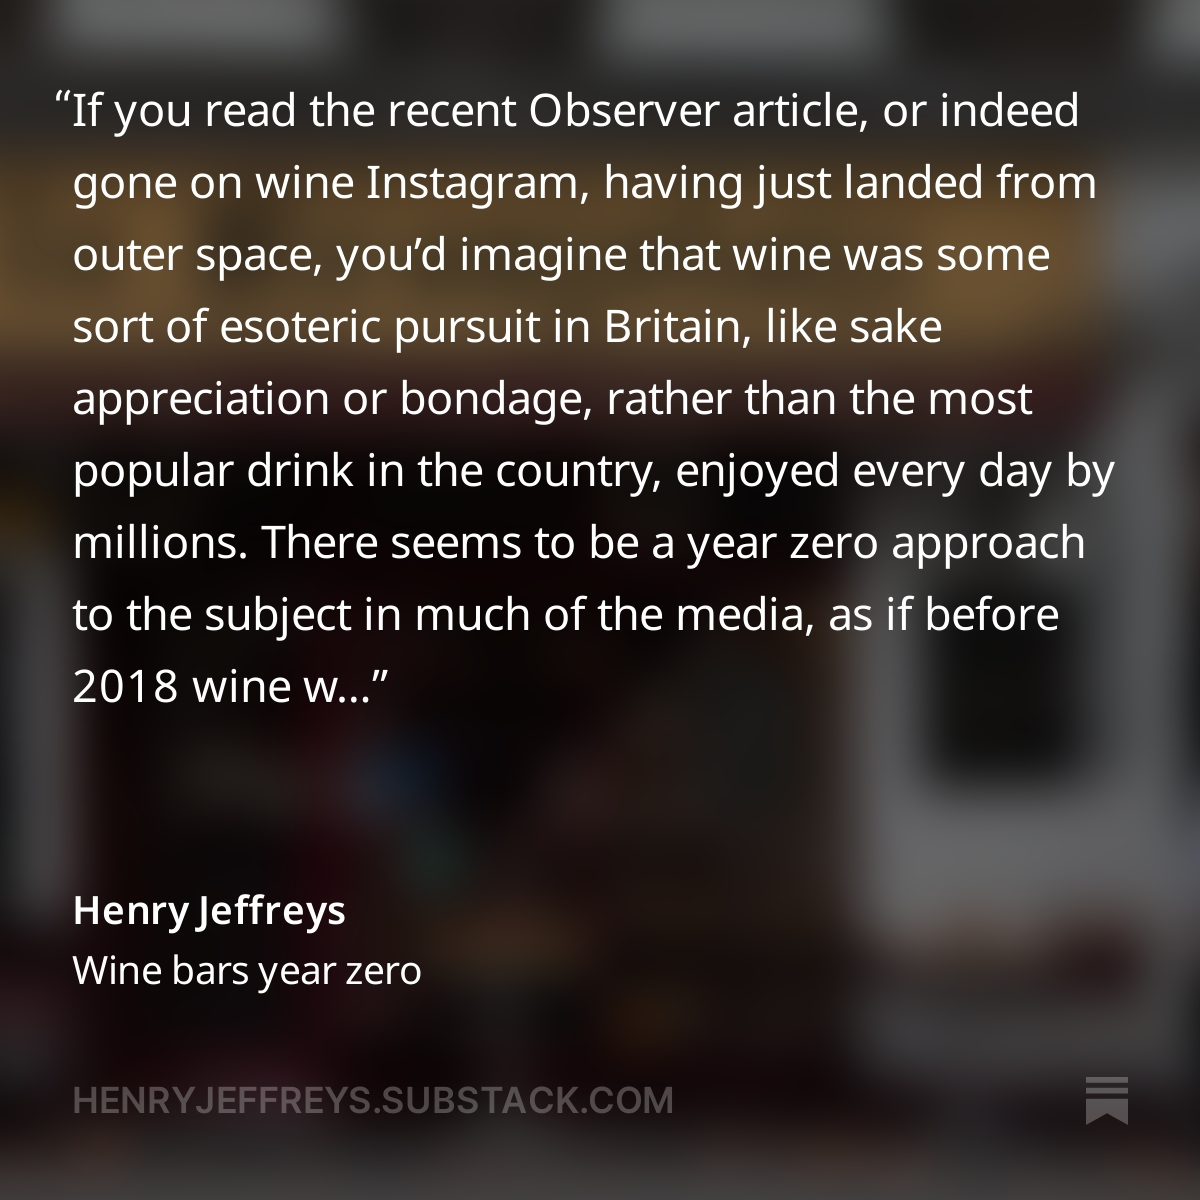 Wine bars year zero henryjeffreys.substack.com/p/wine-bars-ye…